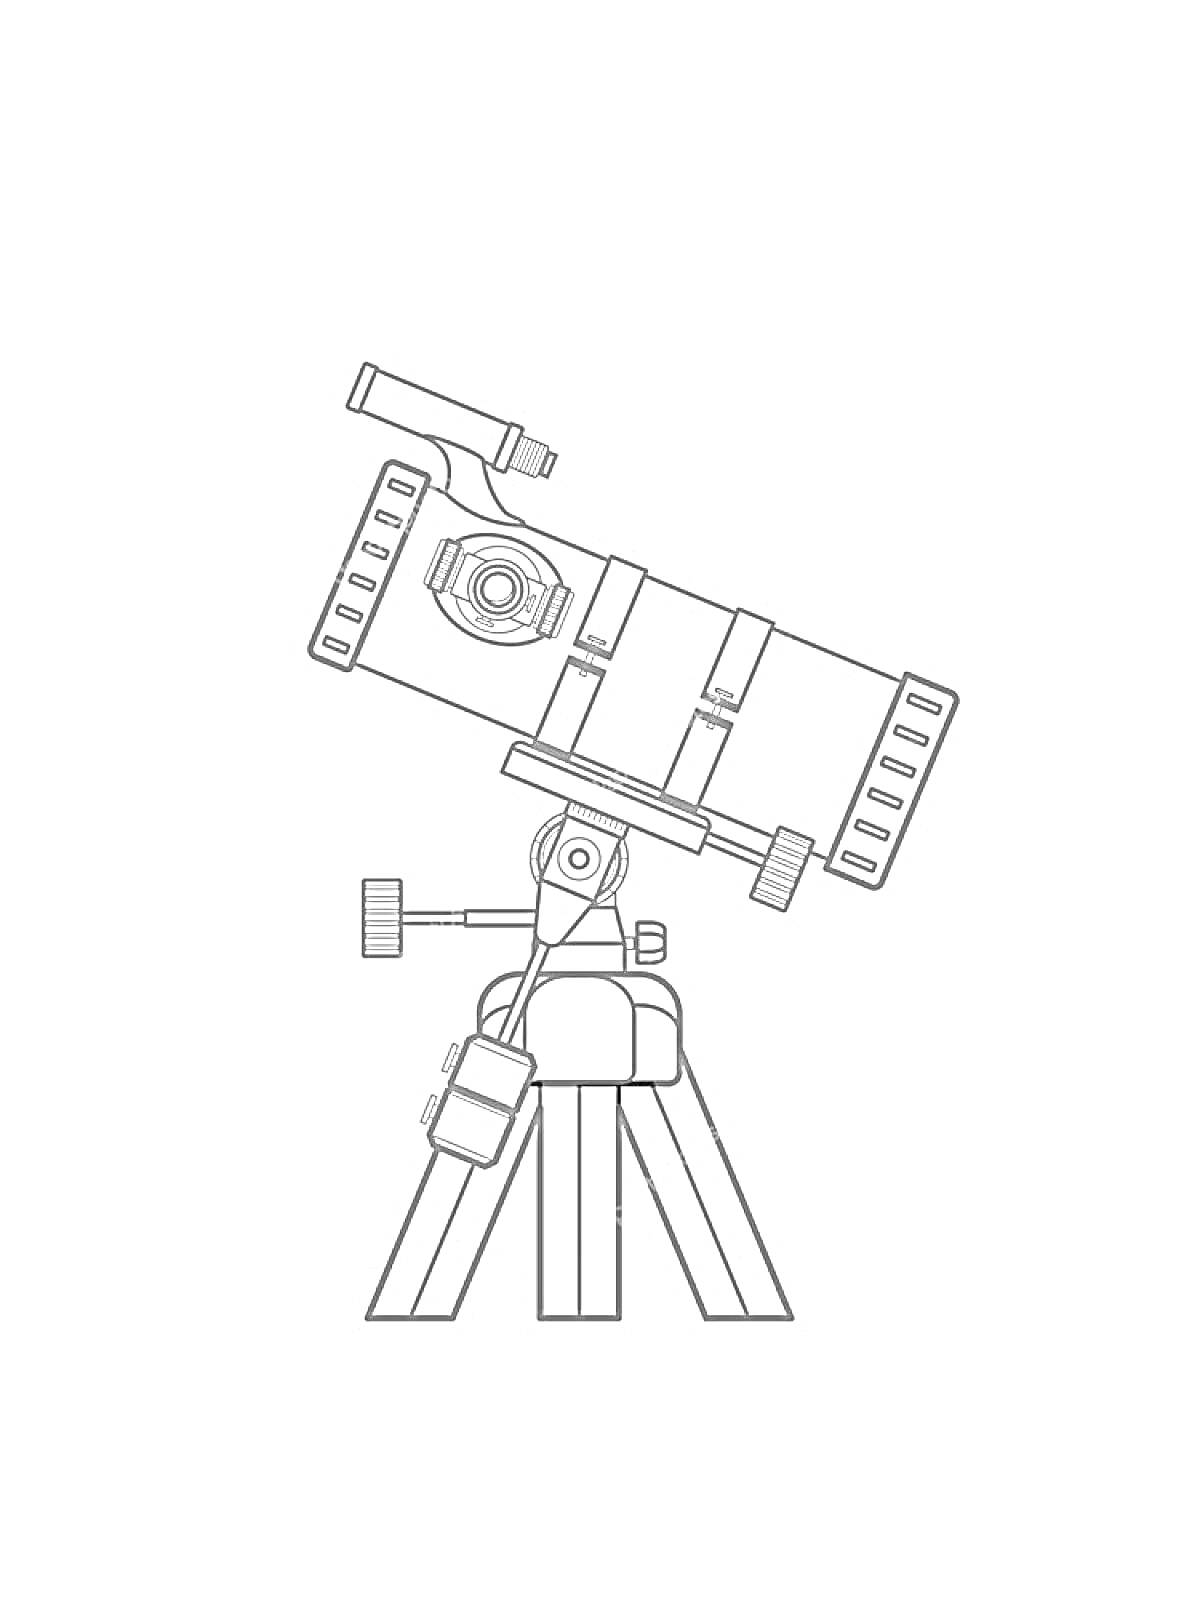 Раскраска Телескоп с креплениями и штативом